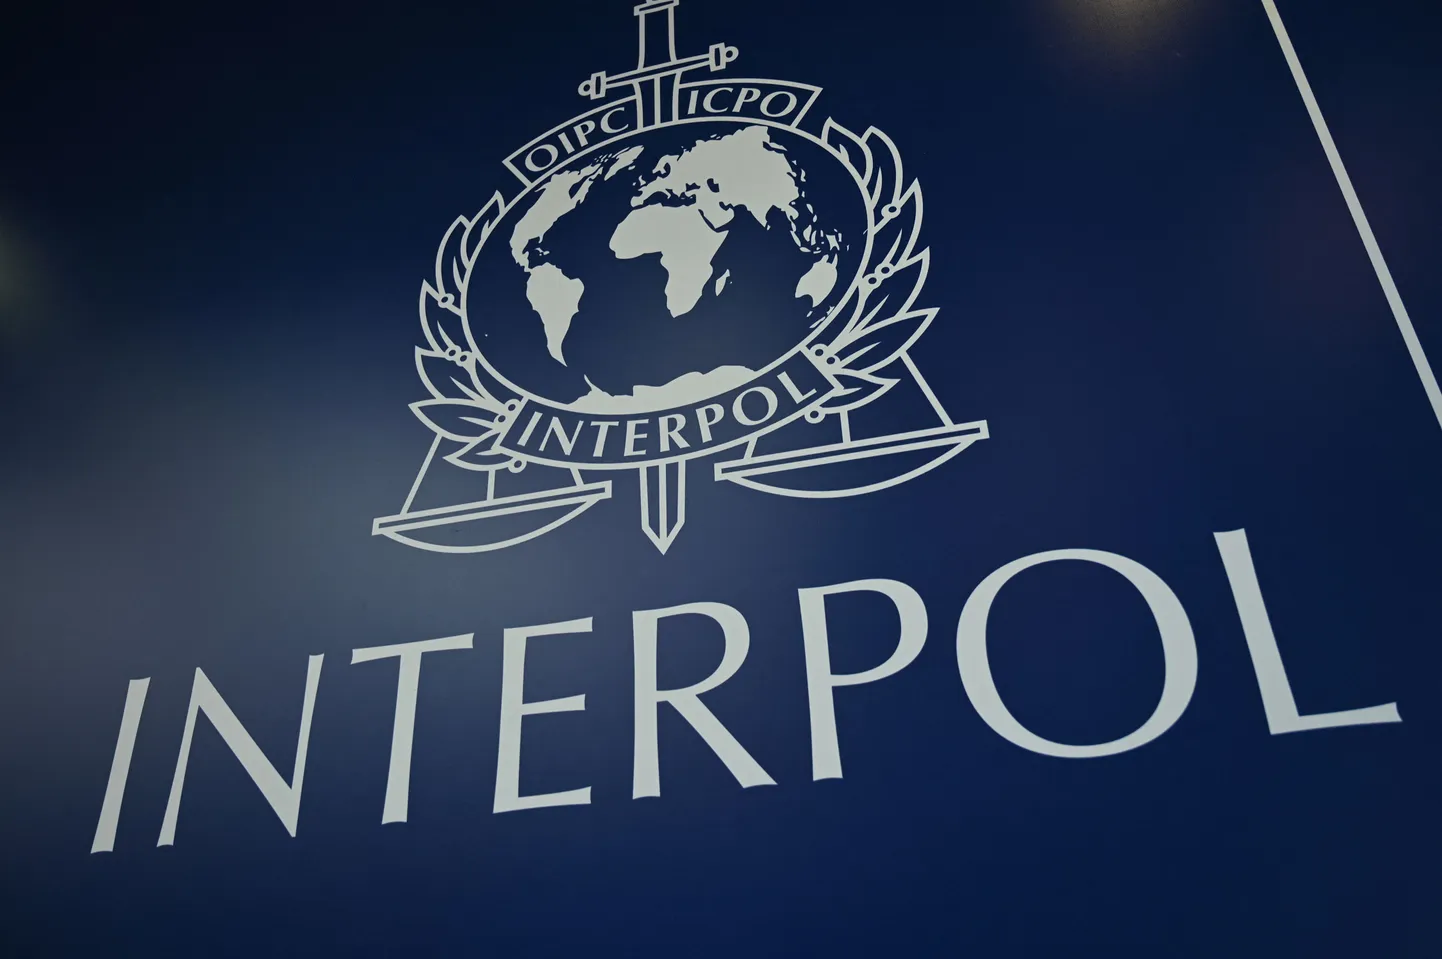 Interpola logo.